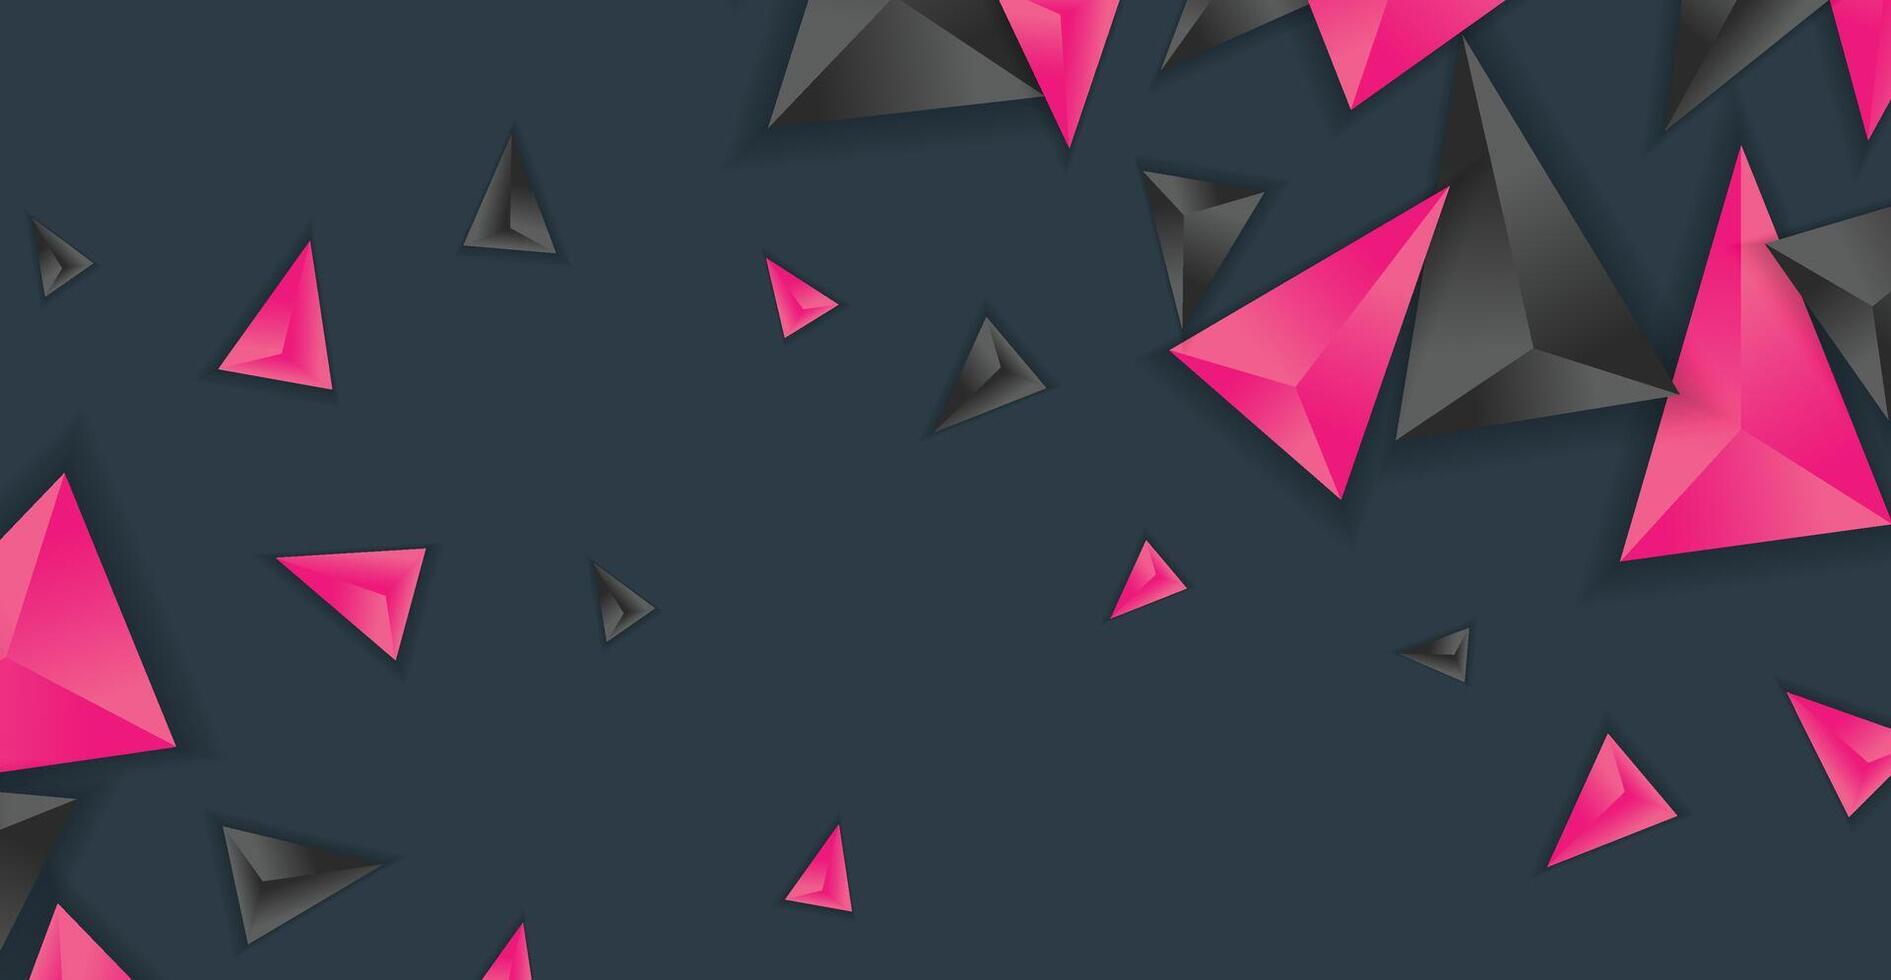 astratto composizione di triangolo. minimo geometrico sfondo vettore